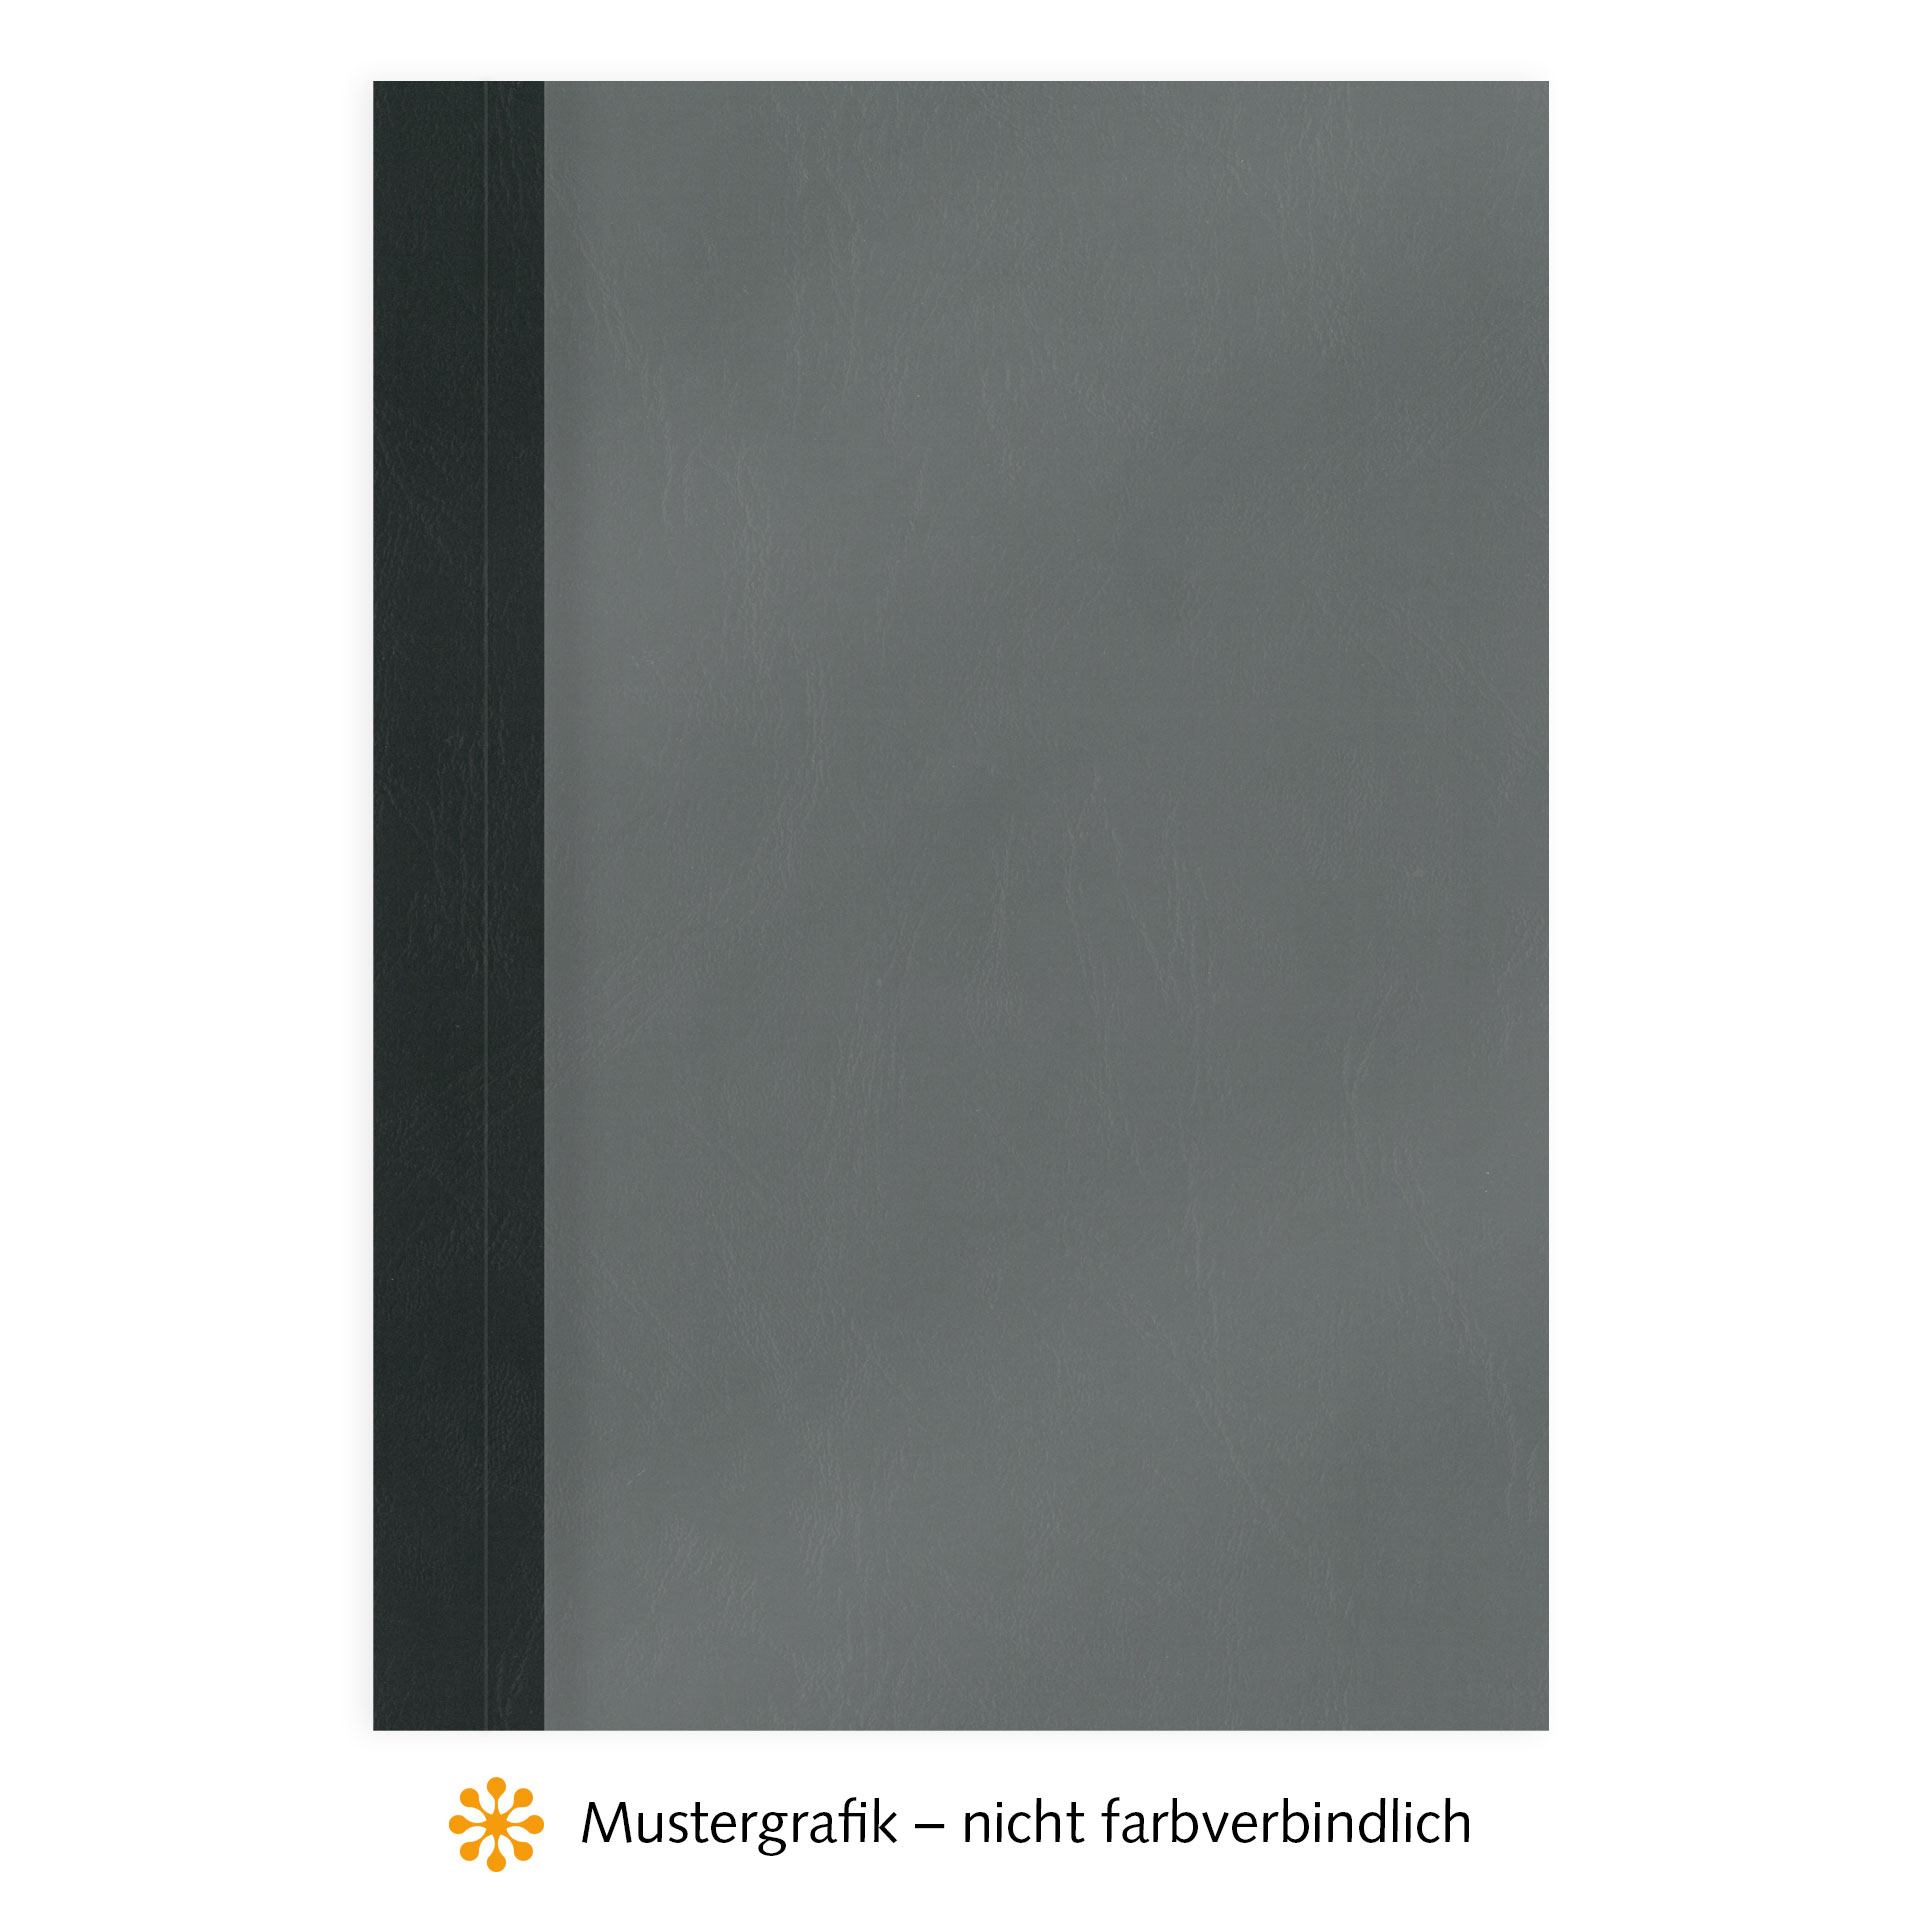 Ösenmappen DUO Cover, Vorderseite Folie MATT transparent, Rückseite Karton Leder, Schwarz, 6 mm, 51 bis 60 Blatt